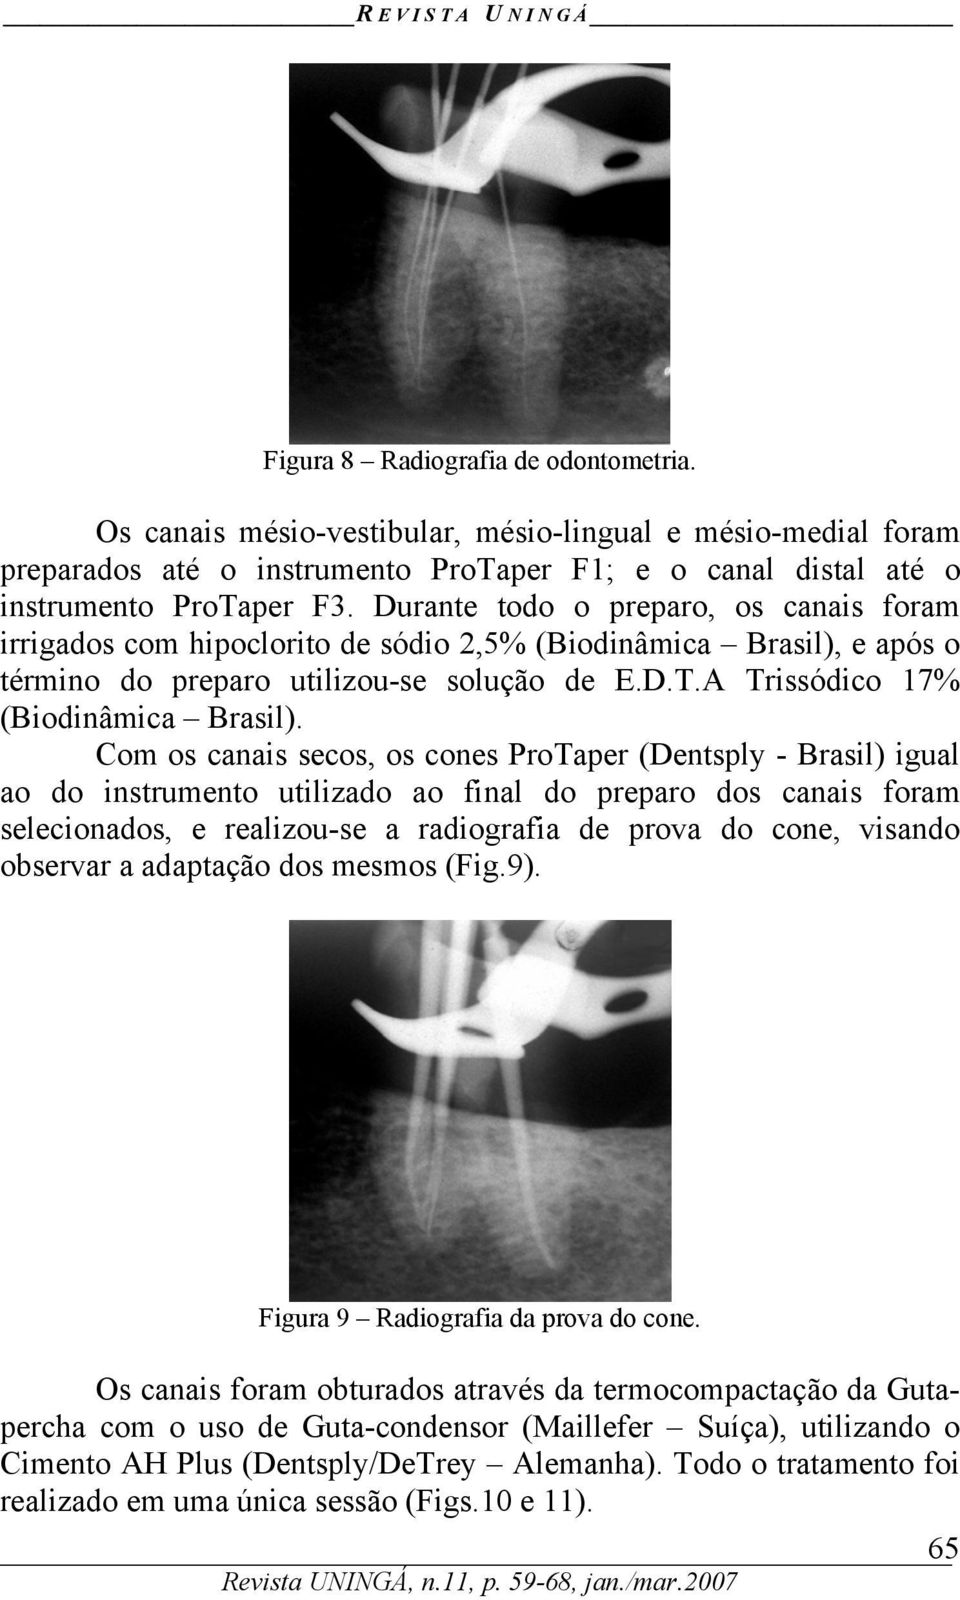 Com os canais secos, os cones ProTaper (Dentsply - Brasil) igual ao do instrumento utilizado ao final do preparo dos canais foram selecionados, e realizou-se a radiografia de prova do cone, visando